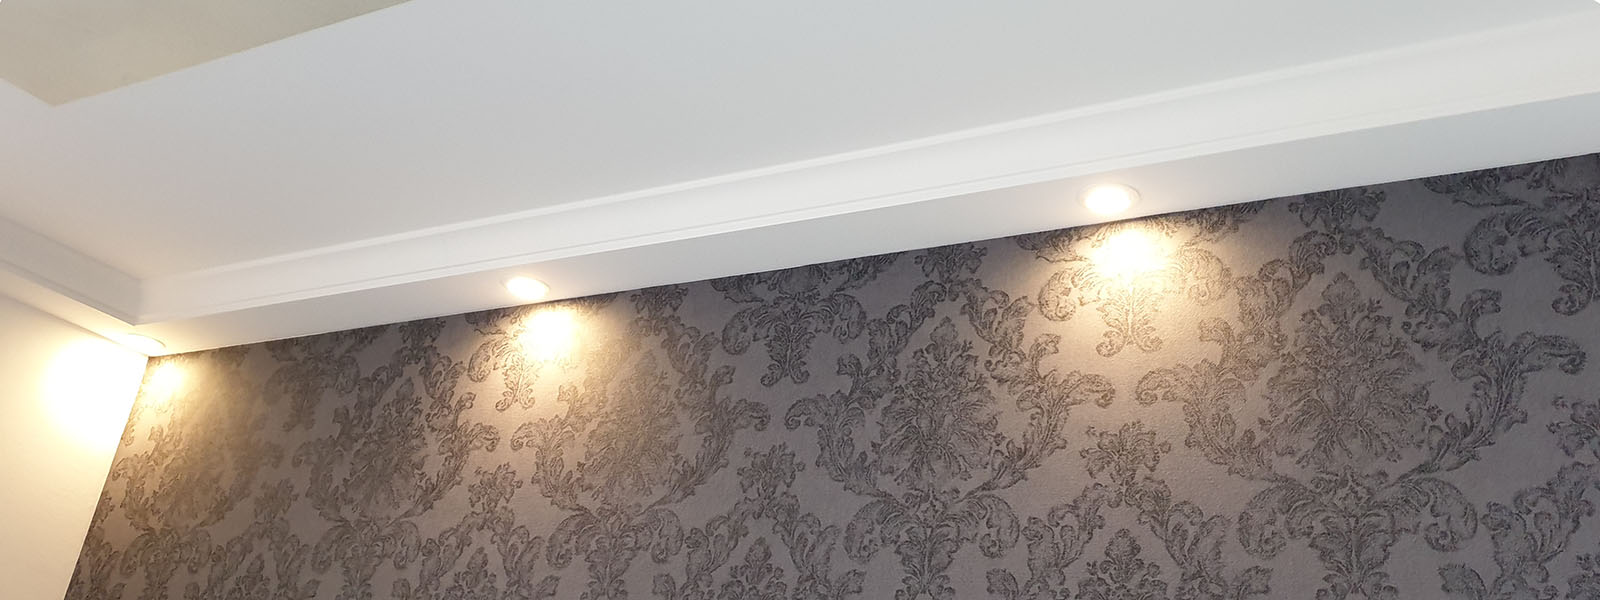 Deckenprofil-LED-Beleuchtung-Wand-BSKL-180B-PR